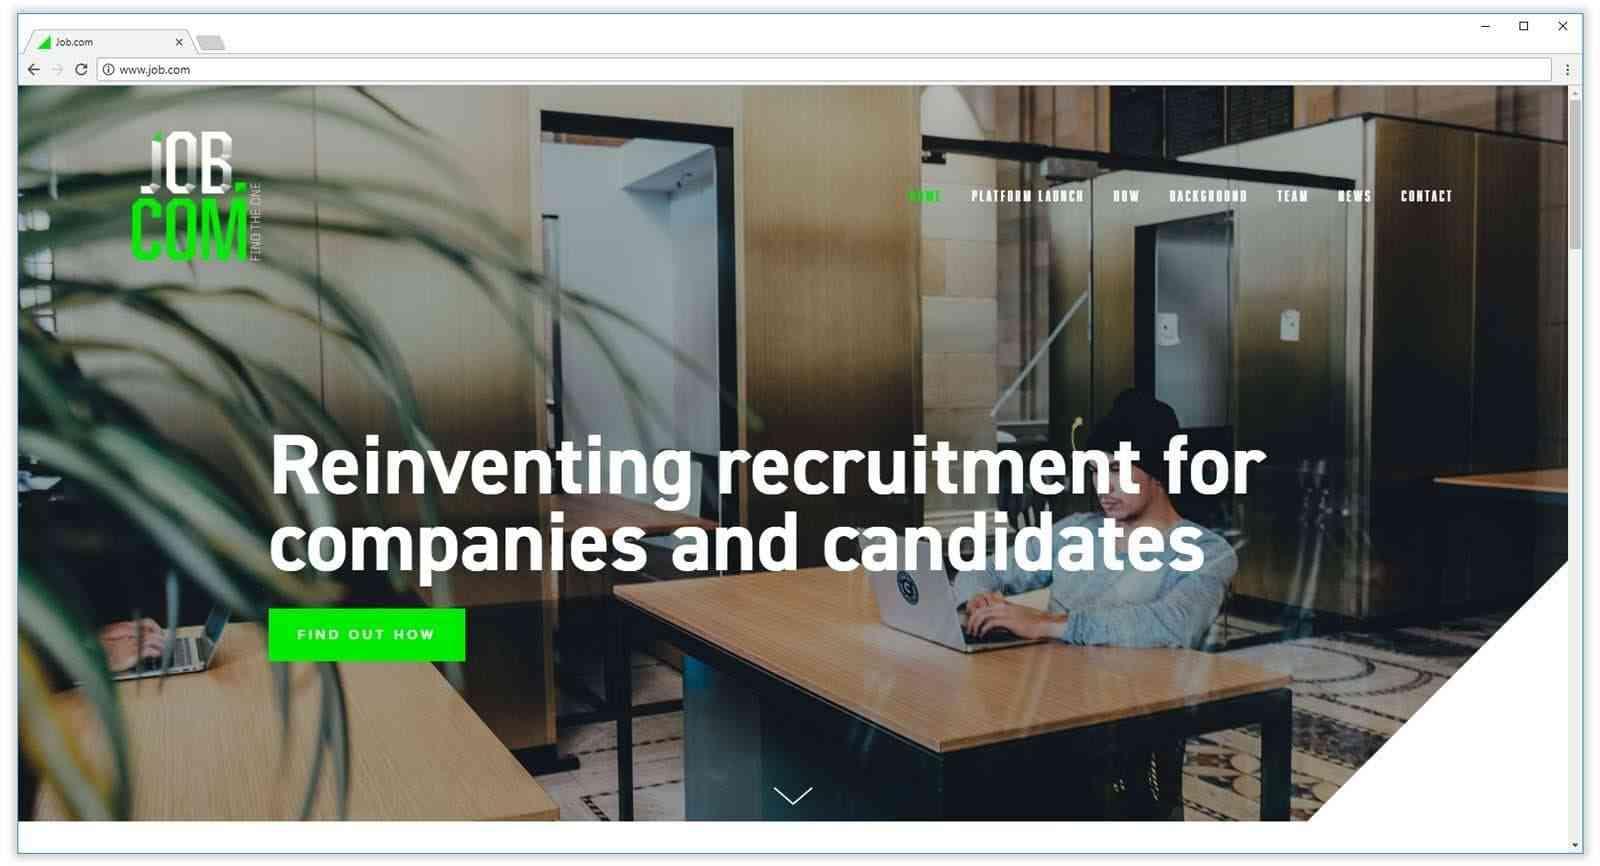 homepage do job.com